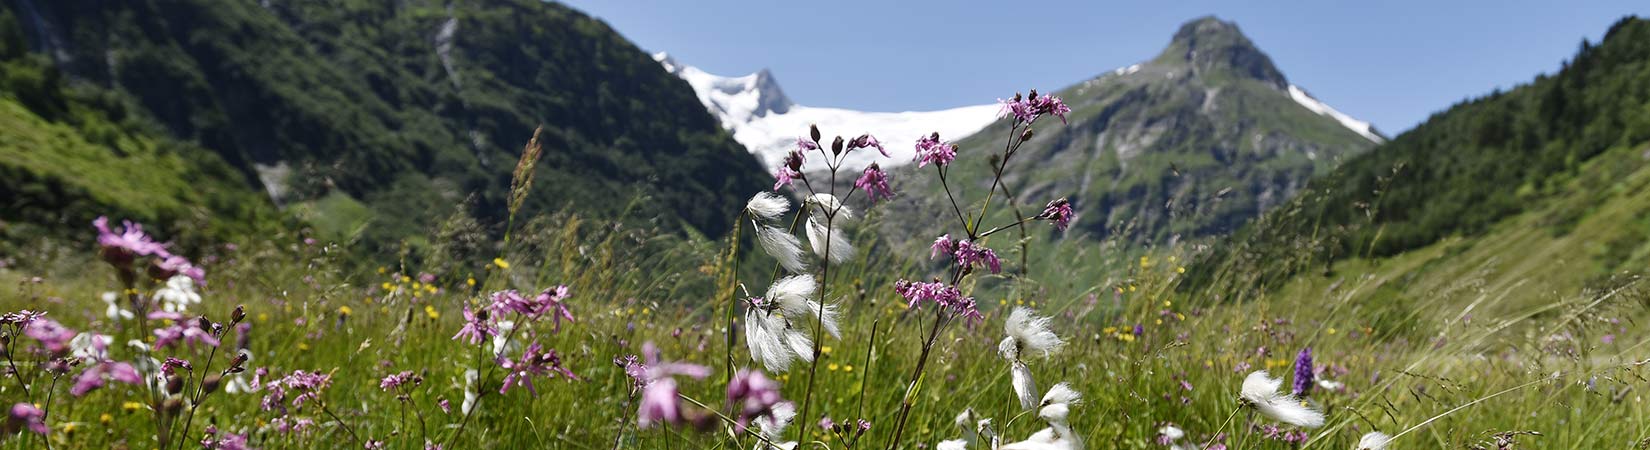 fruehling nationalpark hohe tauern TVB Osttirol Aichner Bernhard Matrei in Osttirol